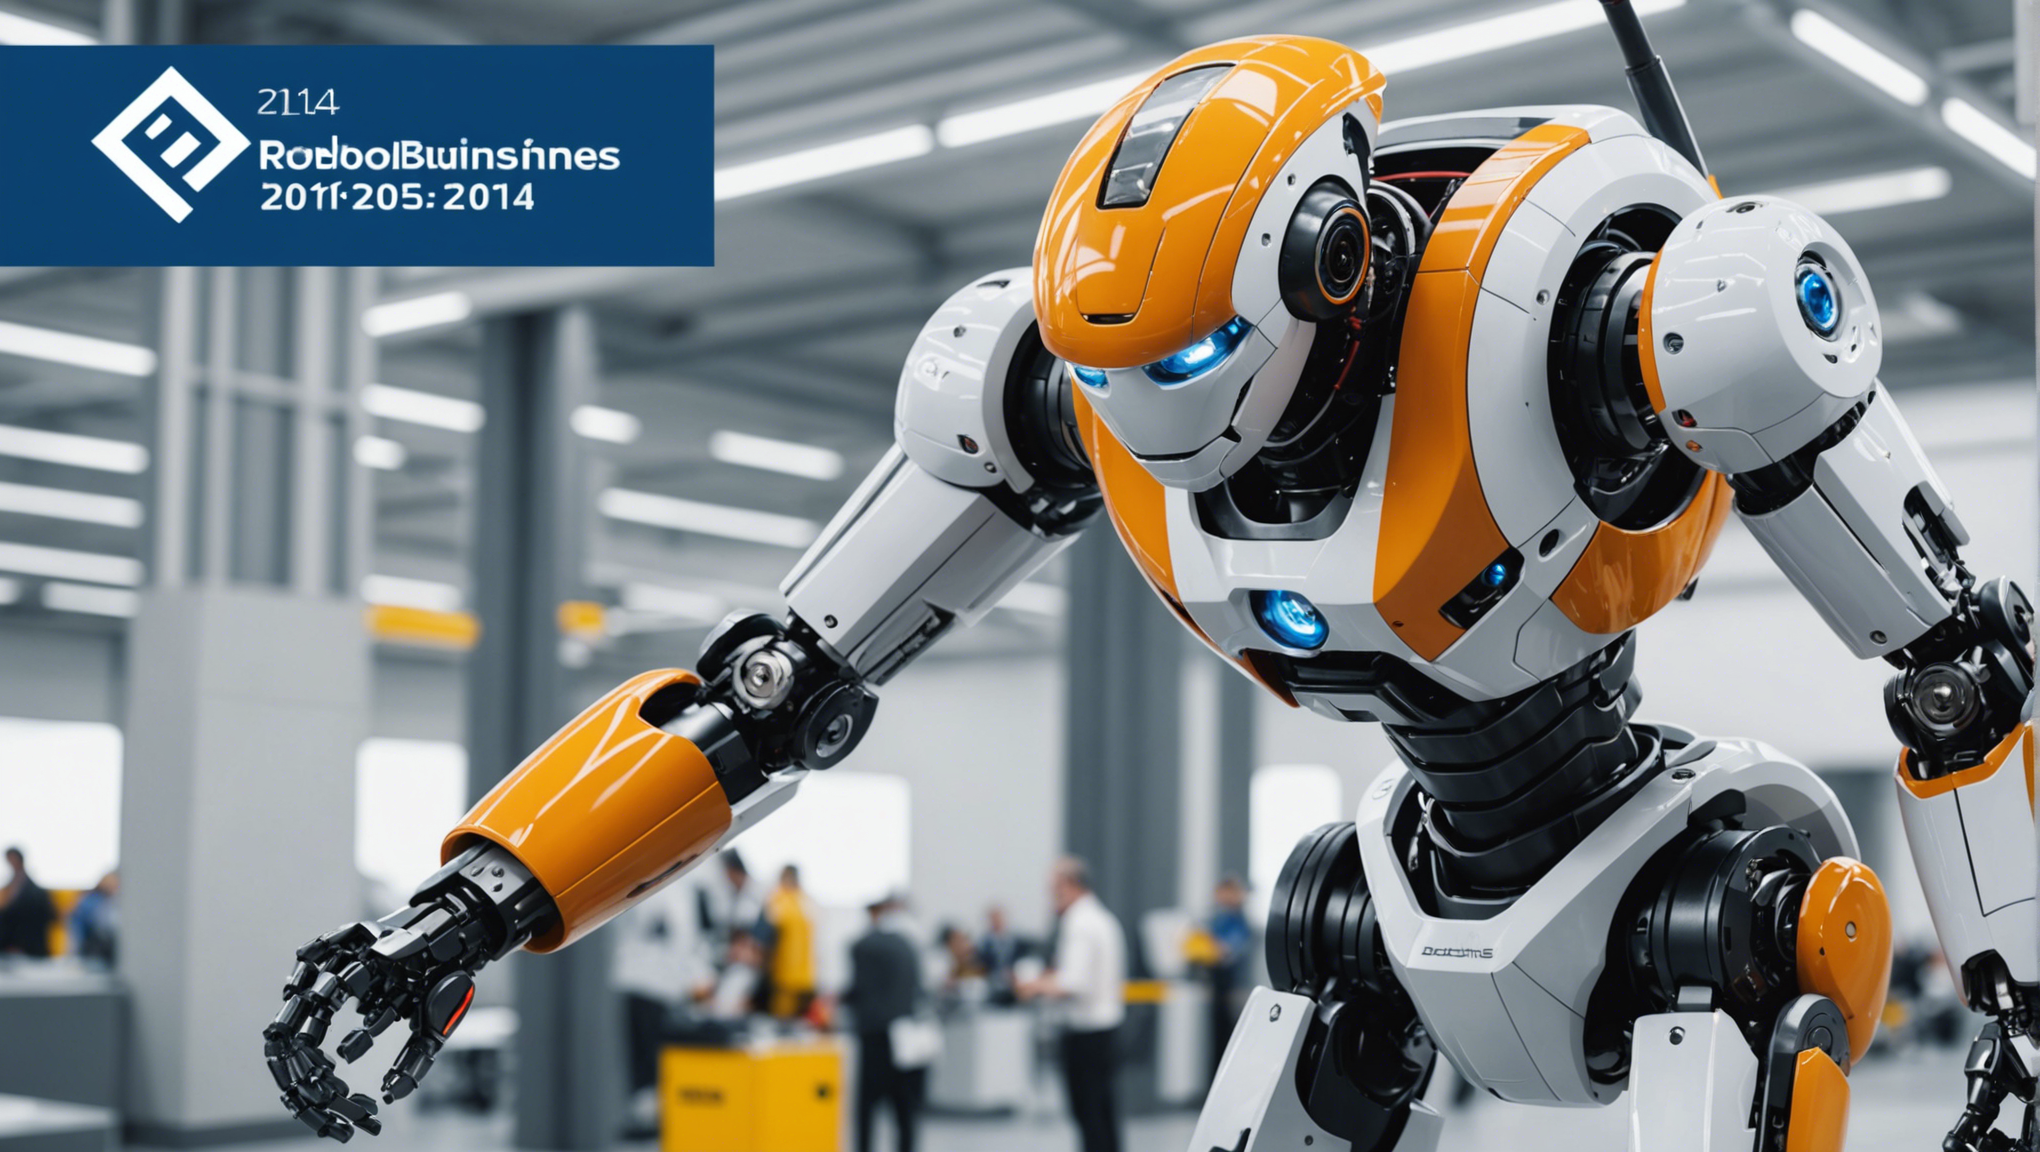 découvrez les bonnes raisons de participer à robobusiness europe 2014 et explorez le monde de la robotique et de l'automatisation industrielle.